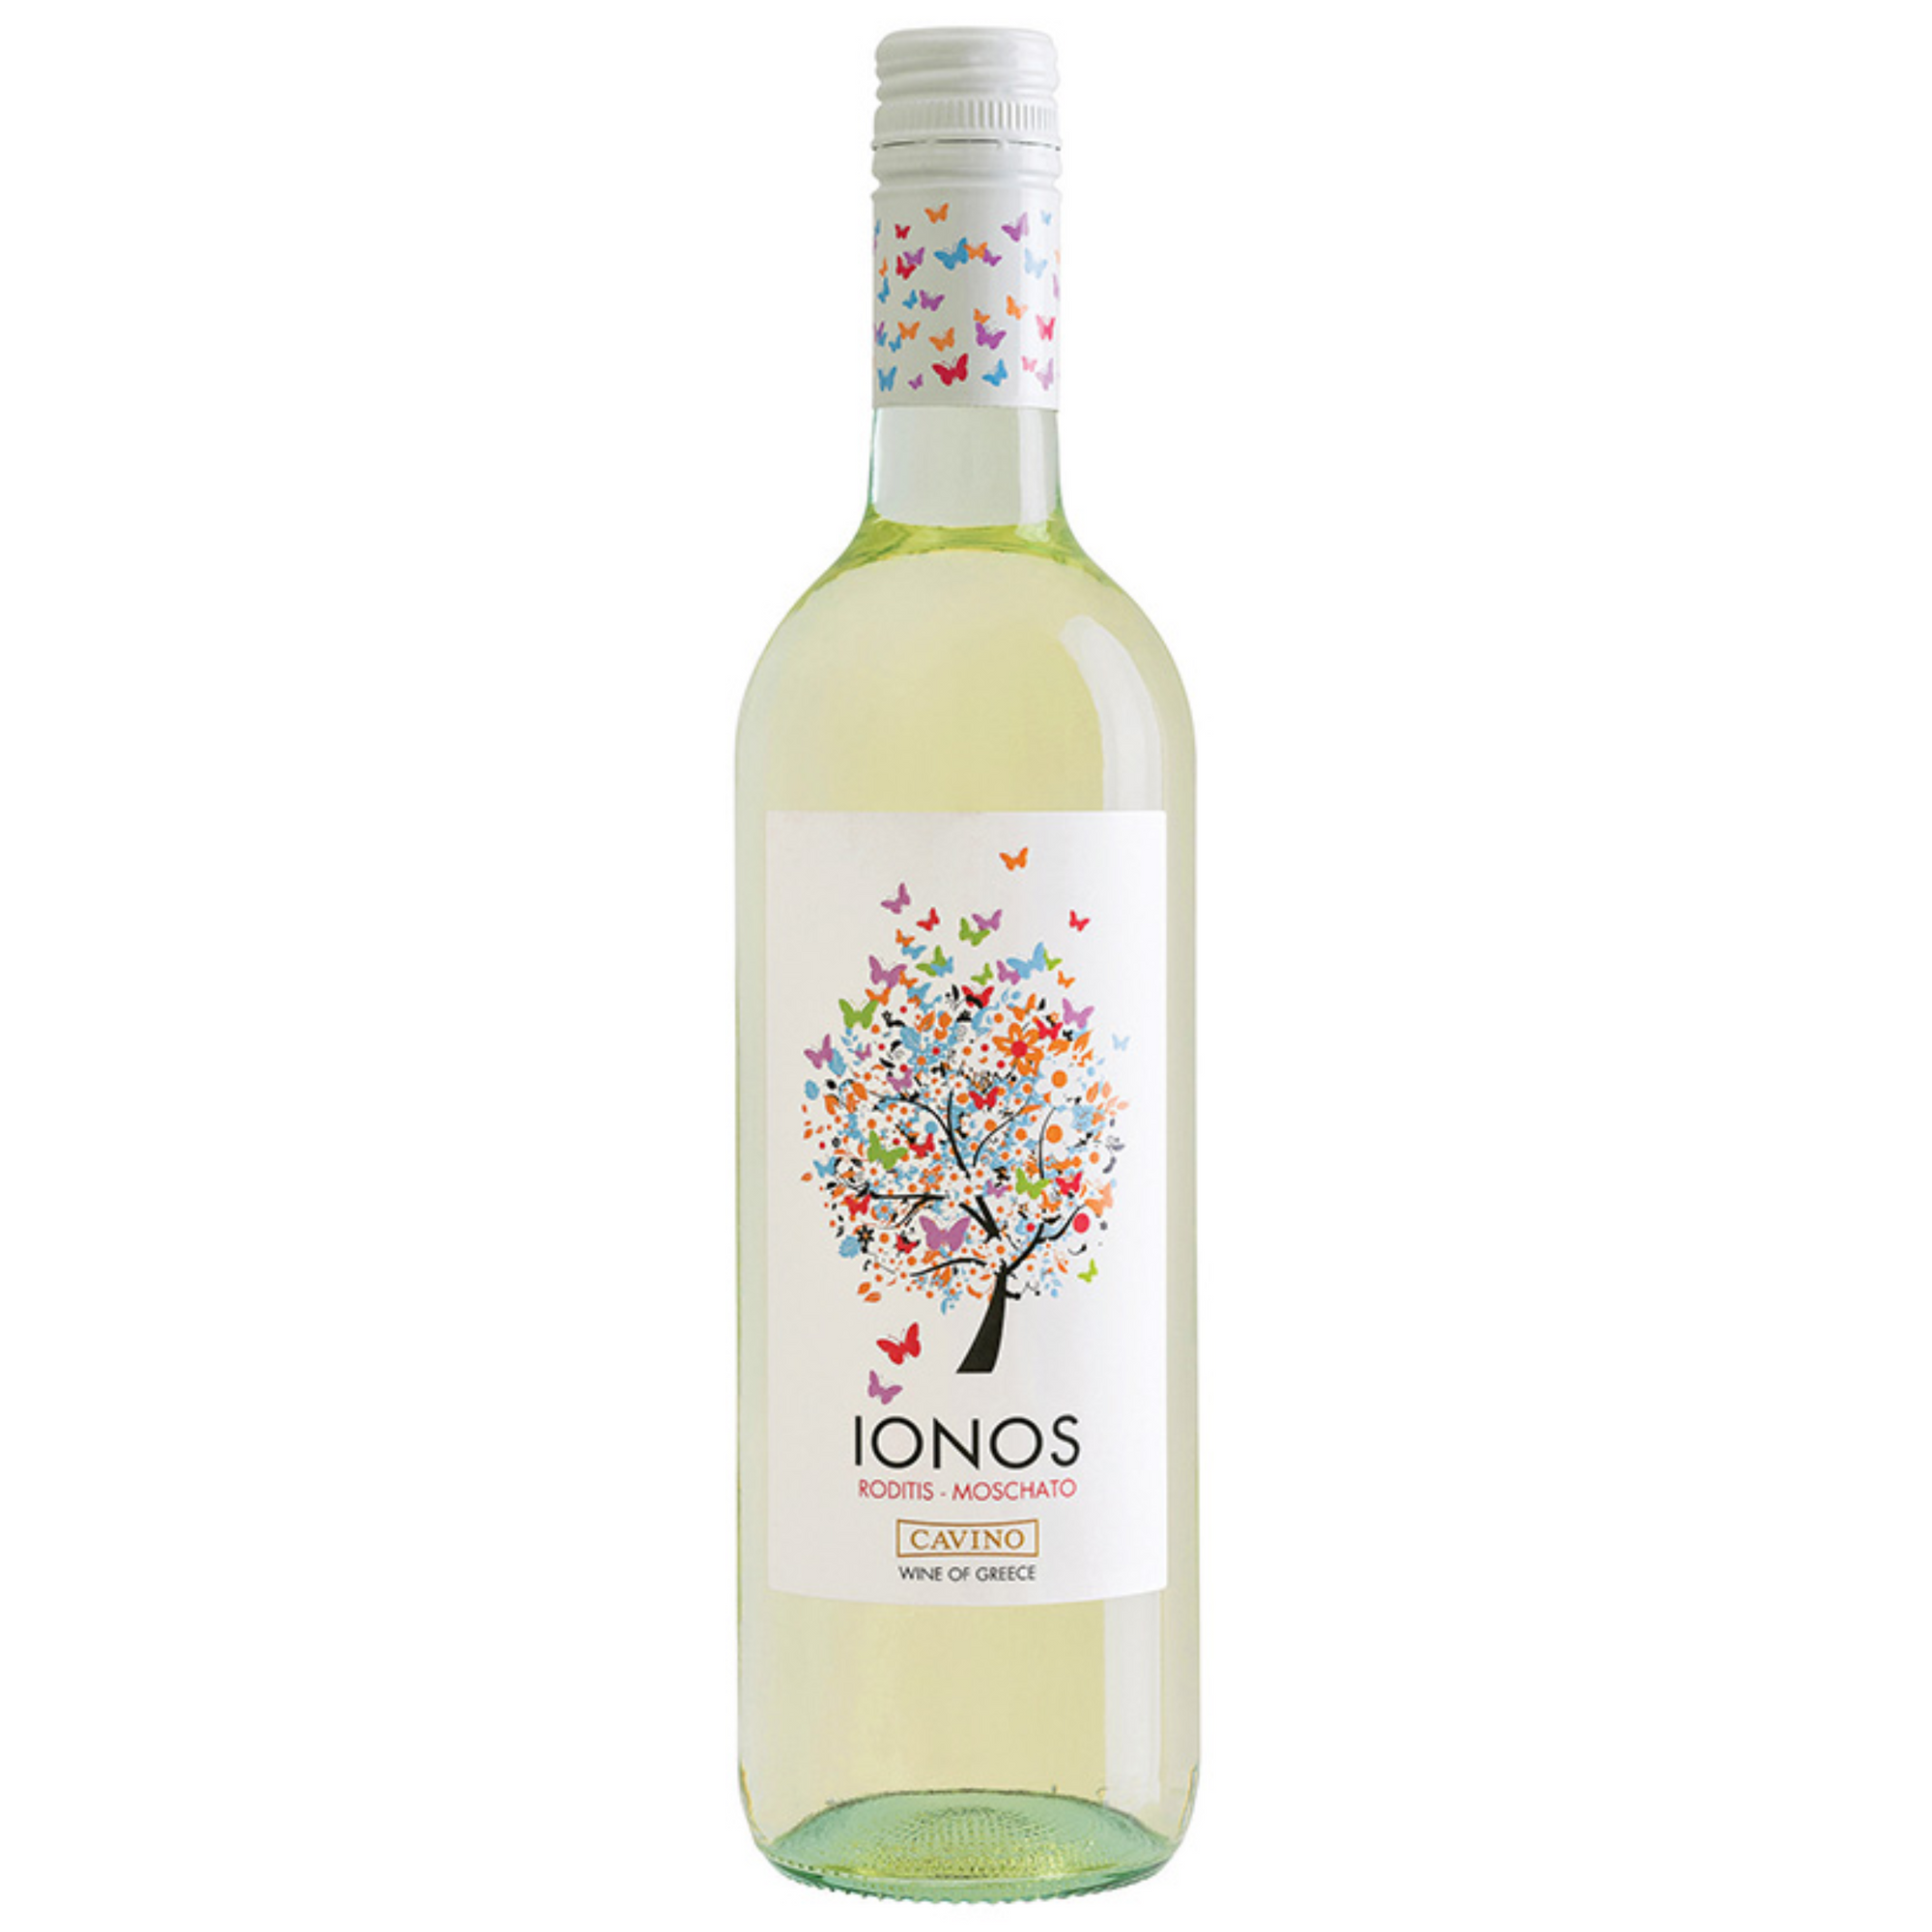 Ionos White Dry Wine 750ml